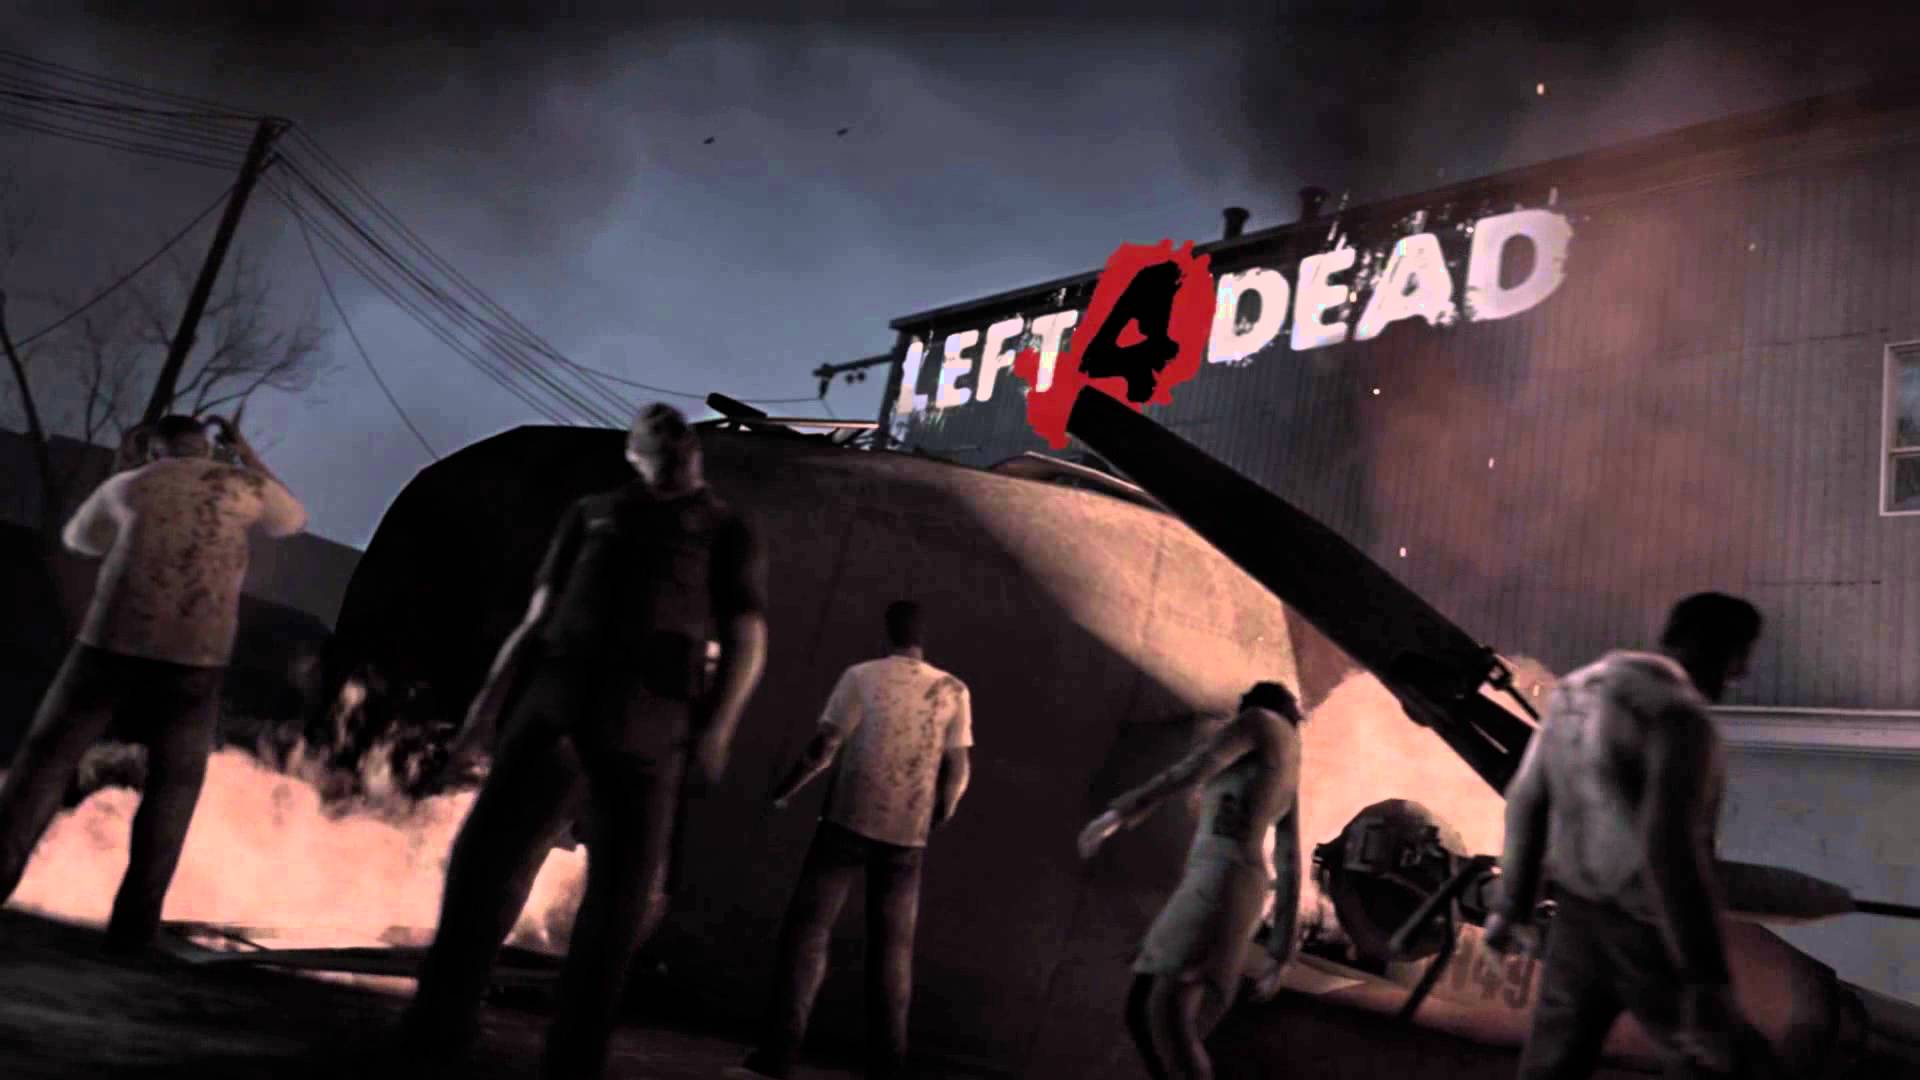 L4D Background - Crash Course - Mod Left 4 Dead 2 - YouTube